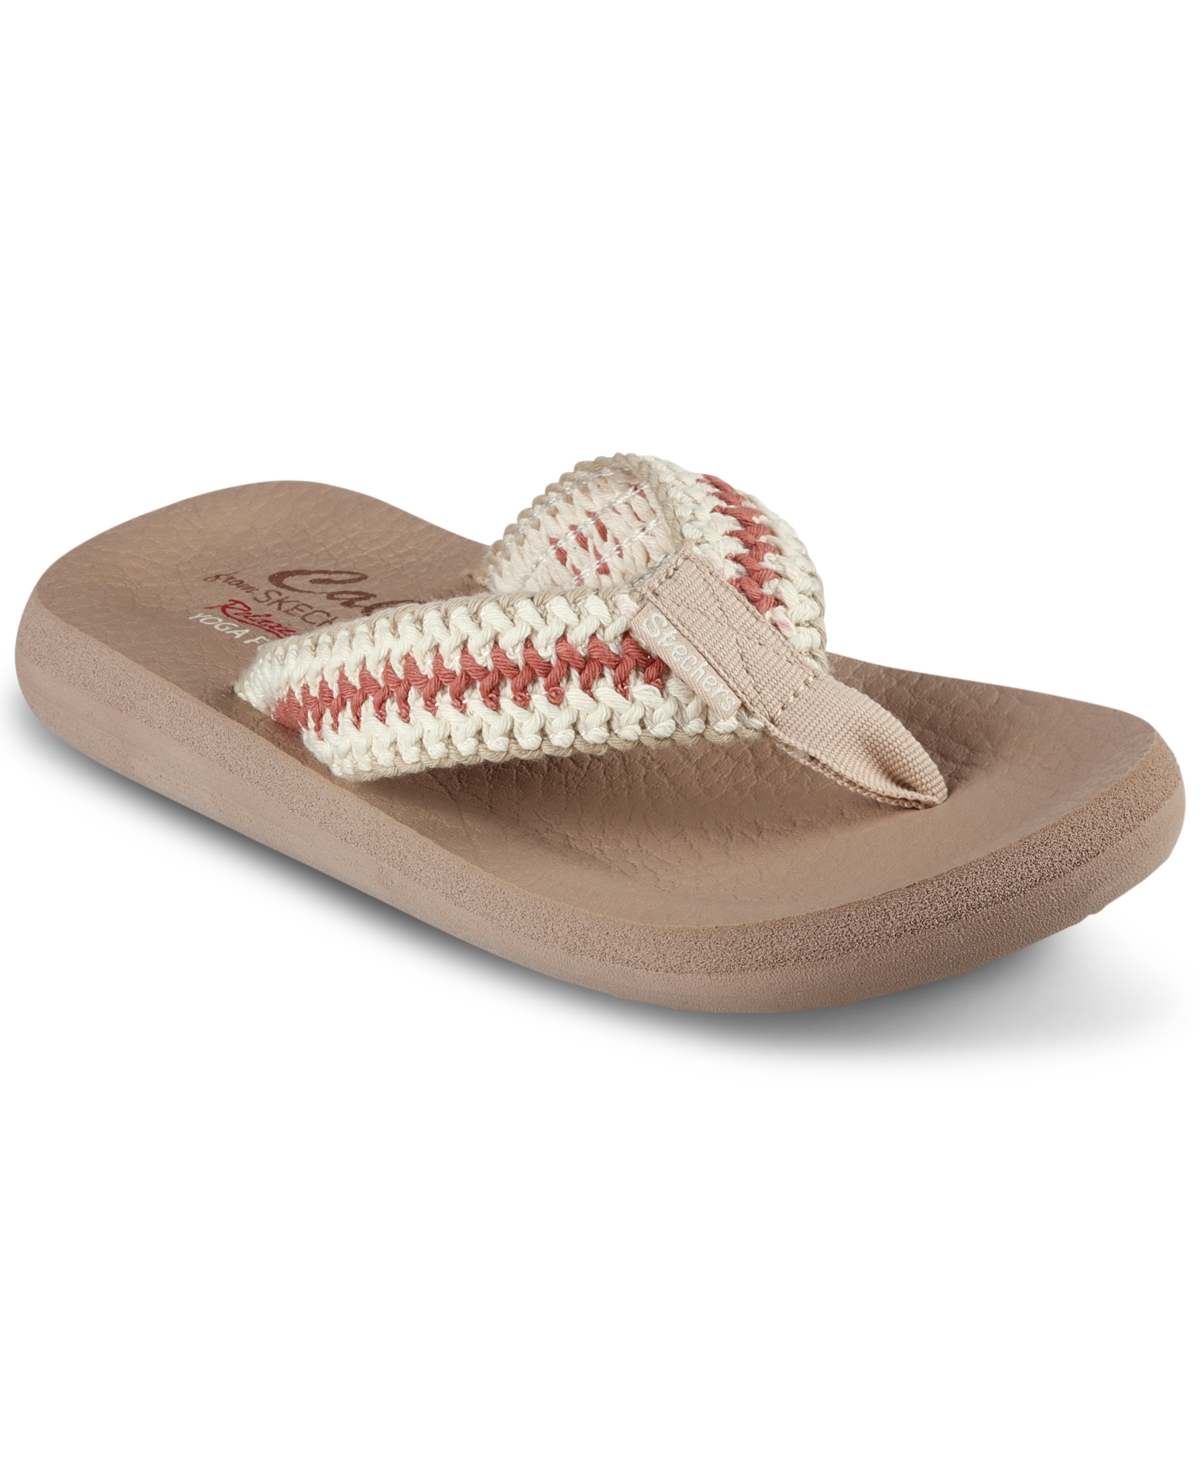 Skechers Women's Cali Asana - Hidden Valley Flip-flop Thong Sandals ...